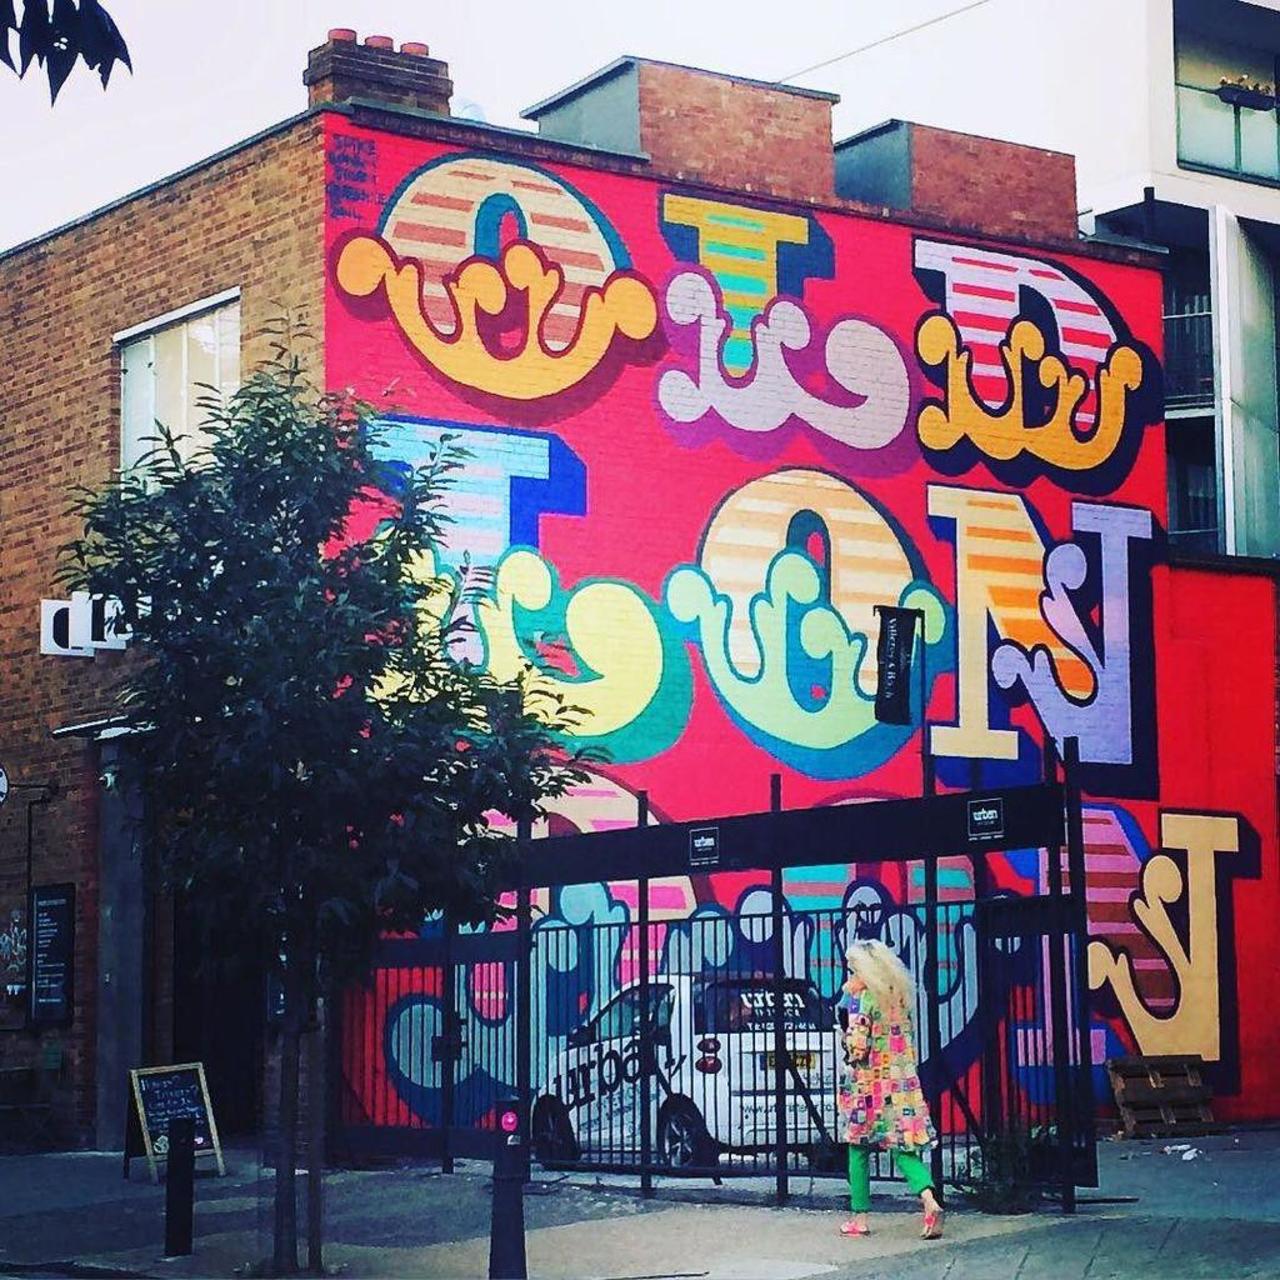 #graffitiporn  #wallporn #mural  #murales  #graffitiporn #lovestreetart #streetart #graffiti #london #loveshoreditc… http://t.co/lARSYxaCSZ